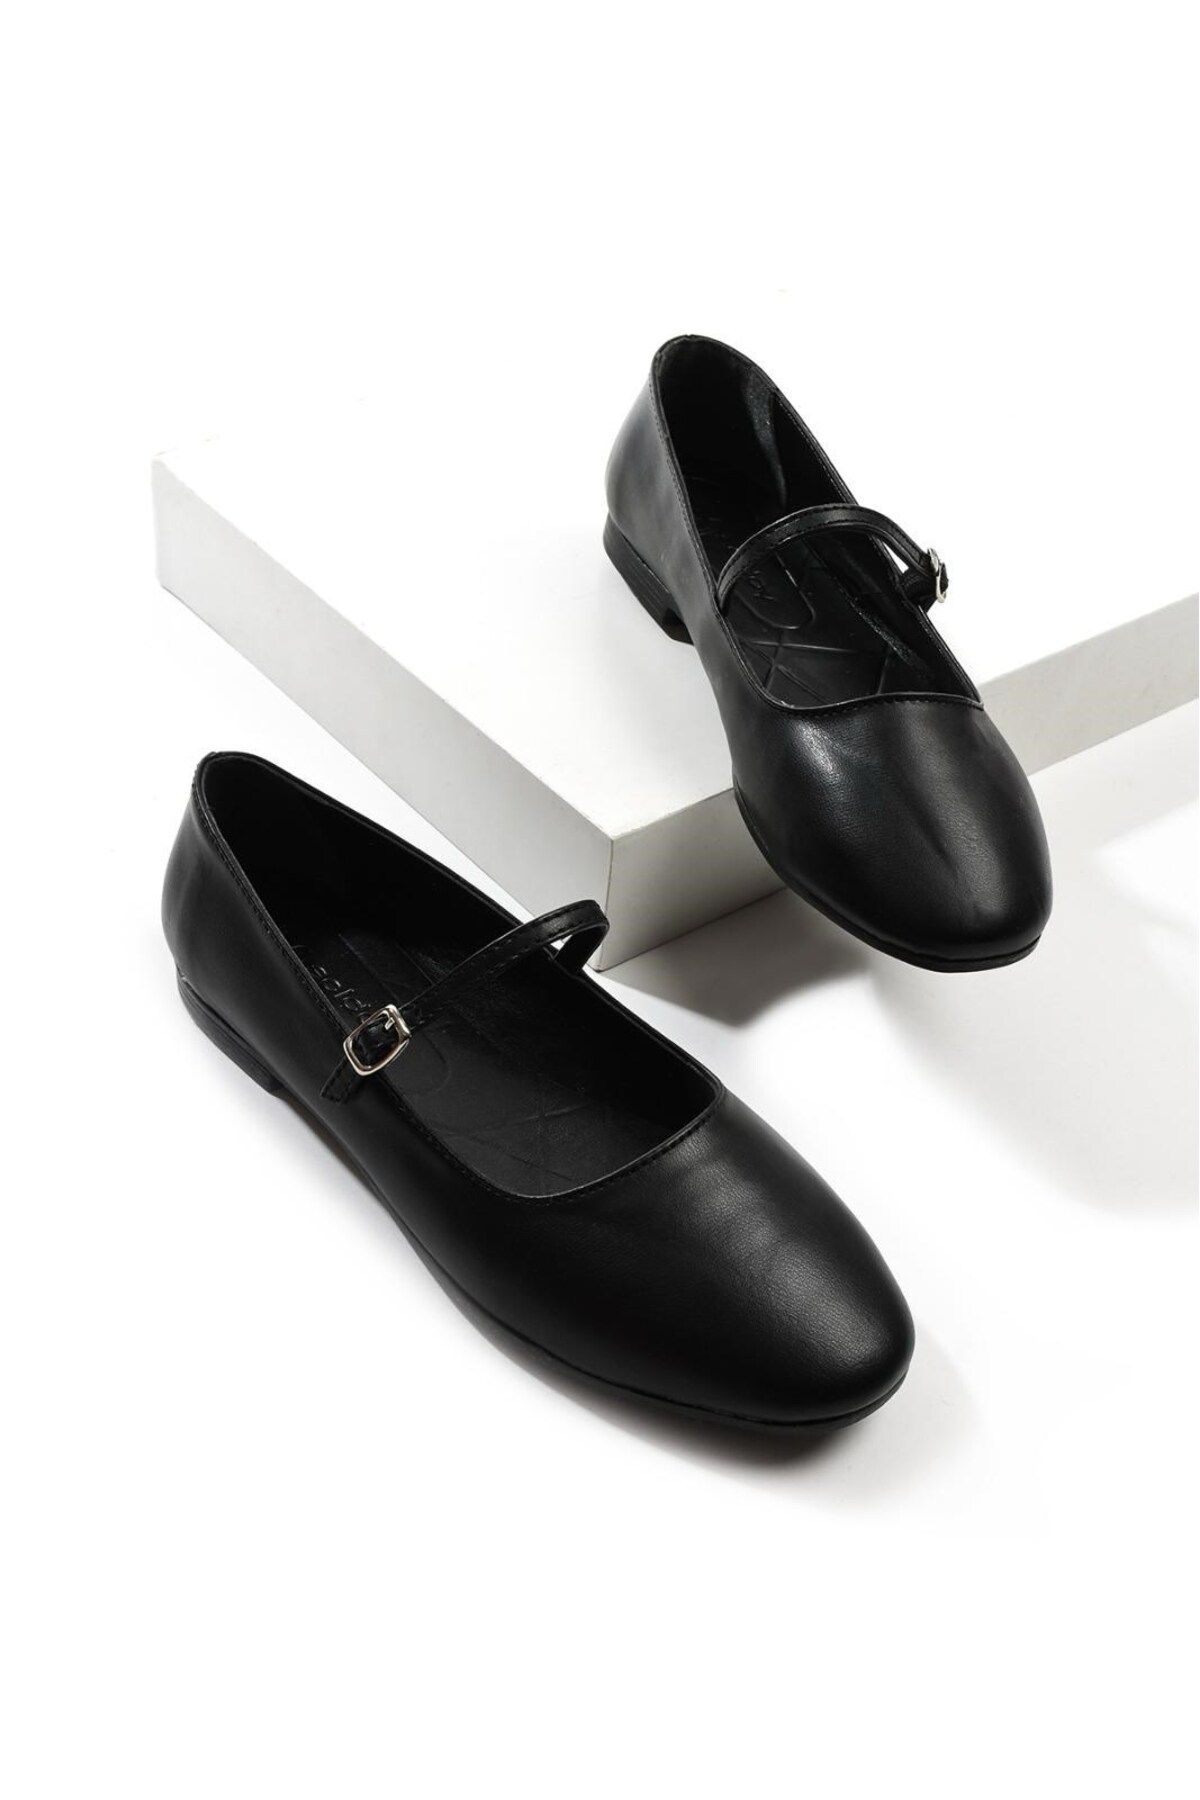 İmerShoes Günlük Kadın Siyah Babet Oval Burun Alçak Topuk Tokalı Hafif Rahat Ayakkabı M-506